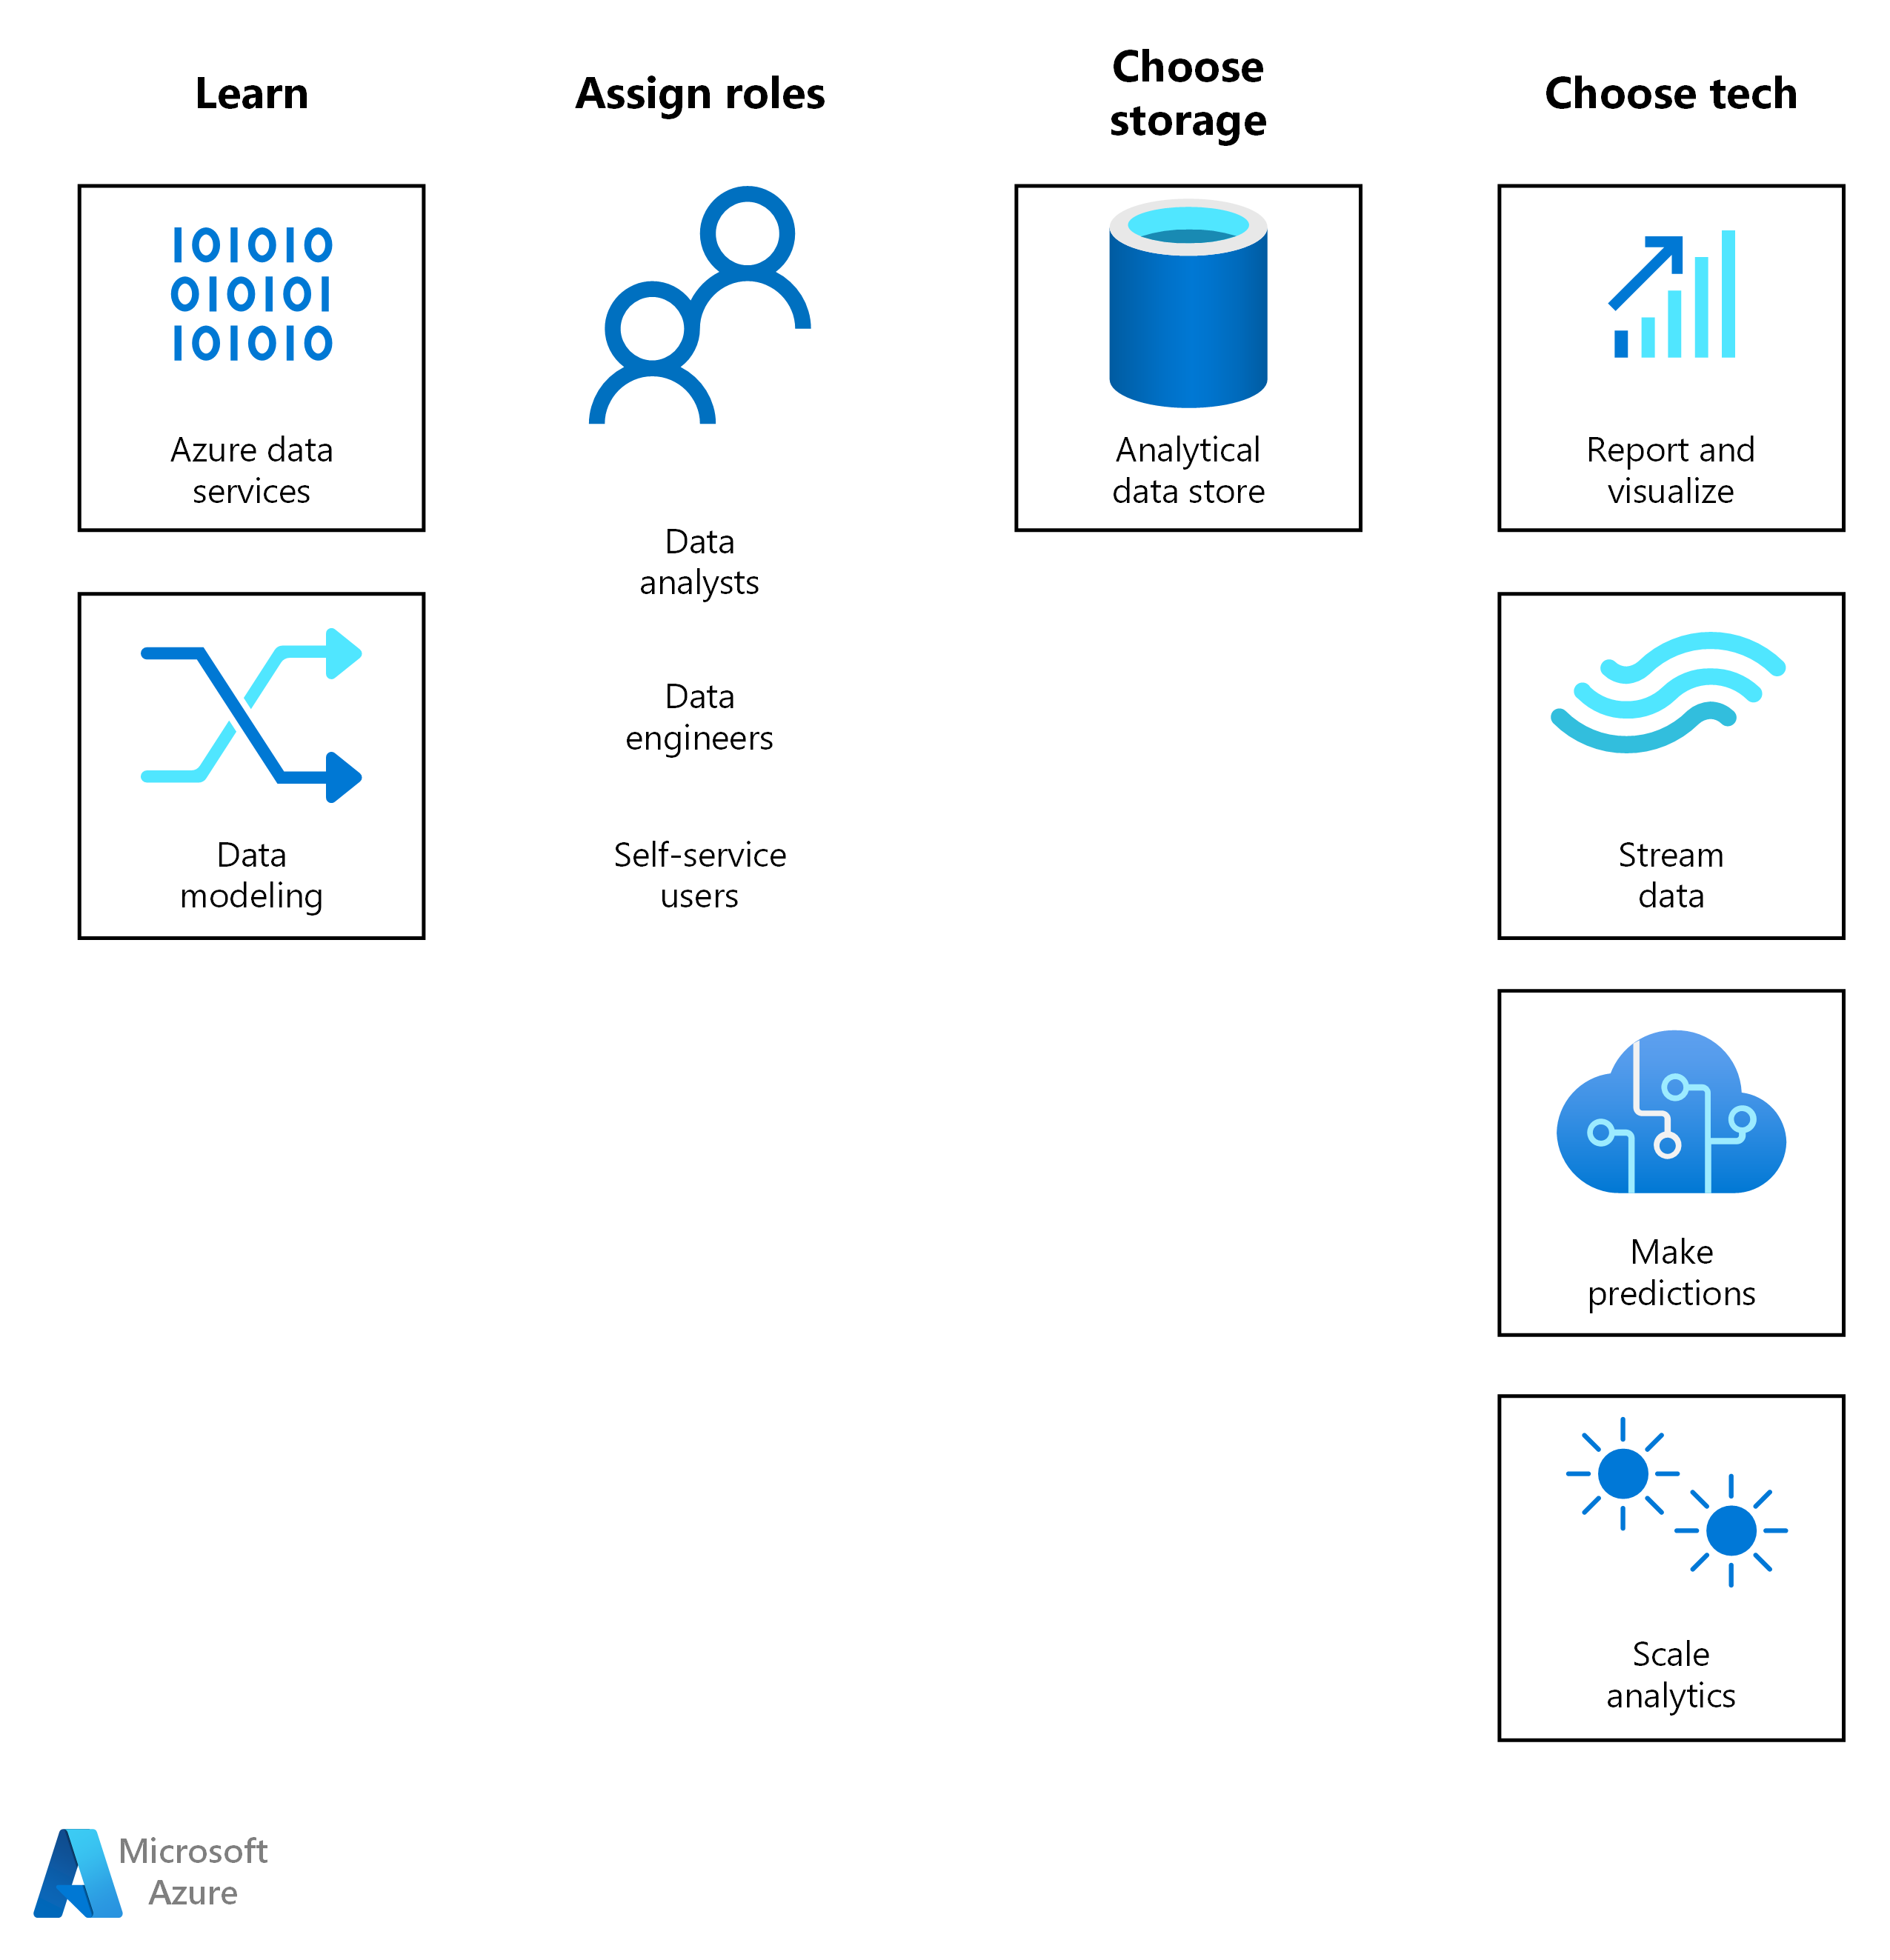 Azure 上分析的解決方案旅程從學習和指派角色開始。接下來，針對工作負載選擇儲存體解決方案和 Azure BI 或 AI 技術。